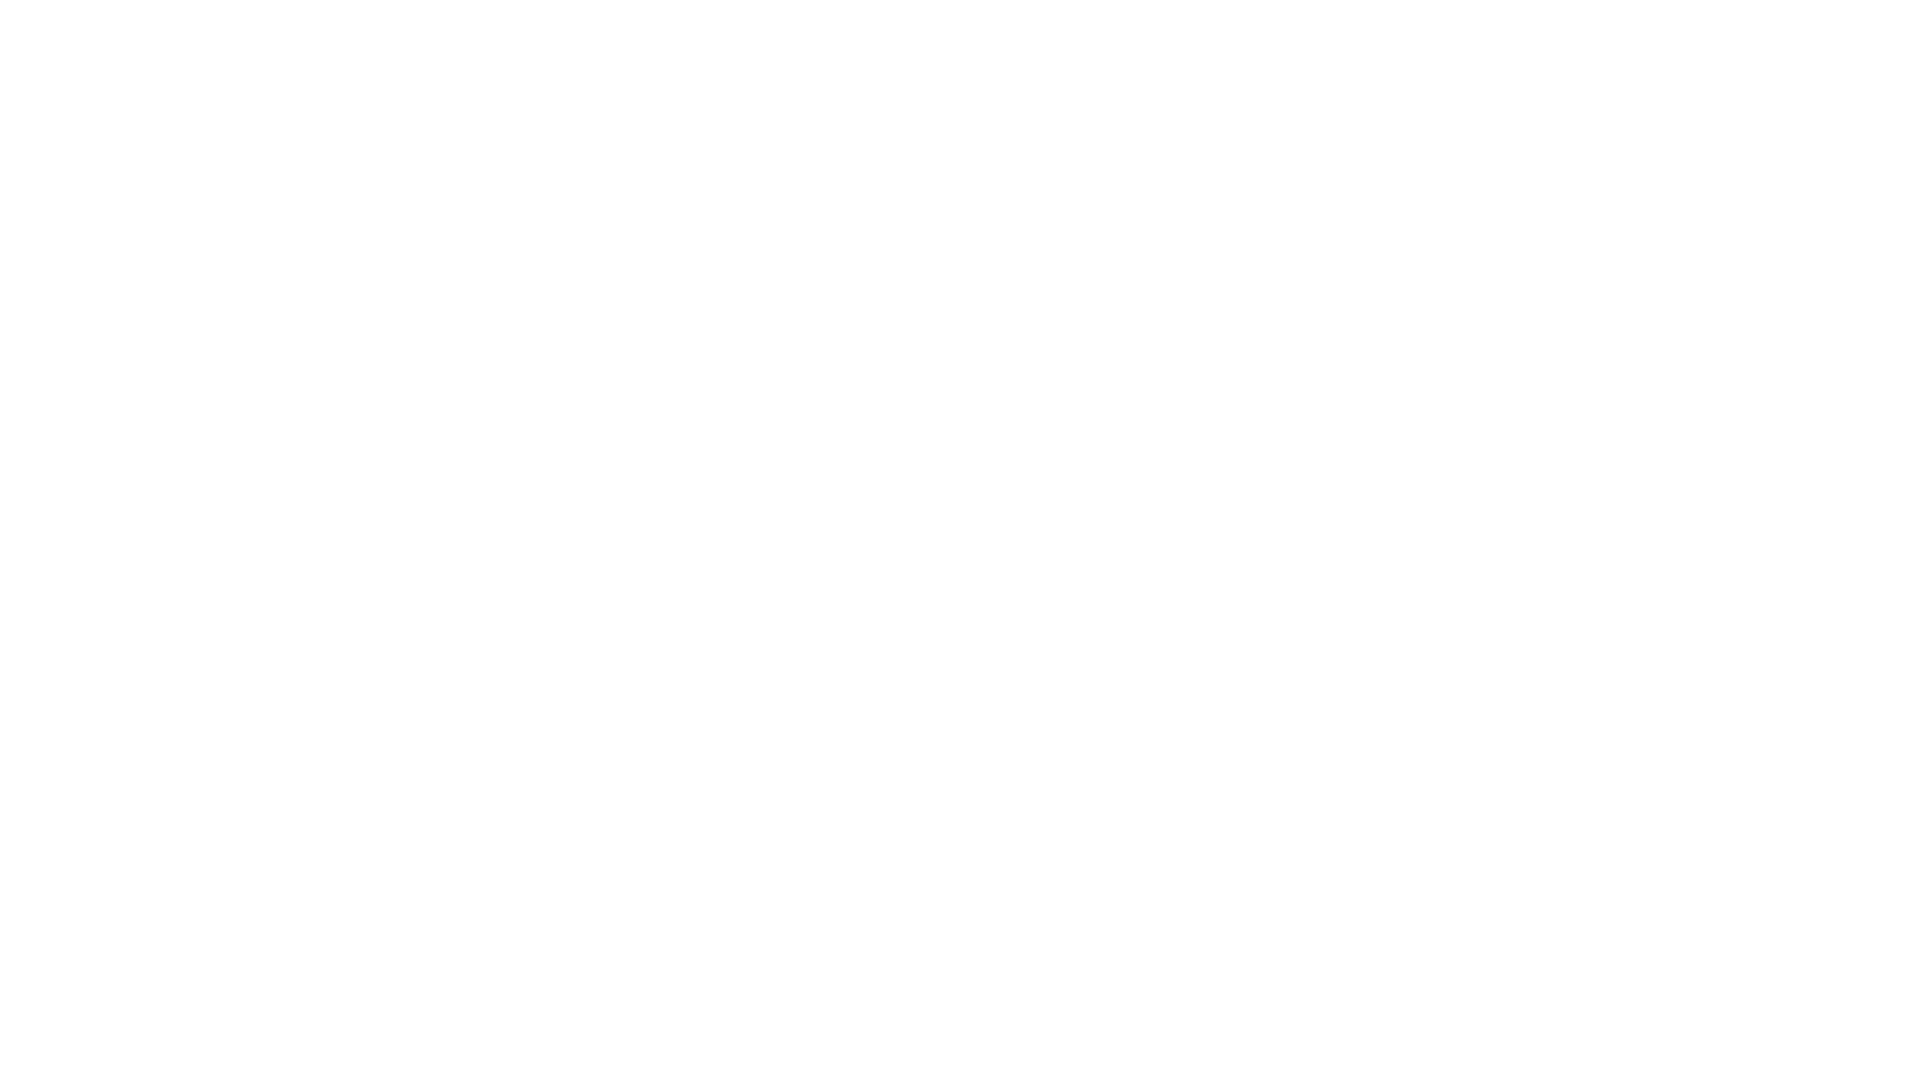 Модель «Колесо бренда» (шаблон для заполнения)